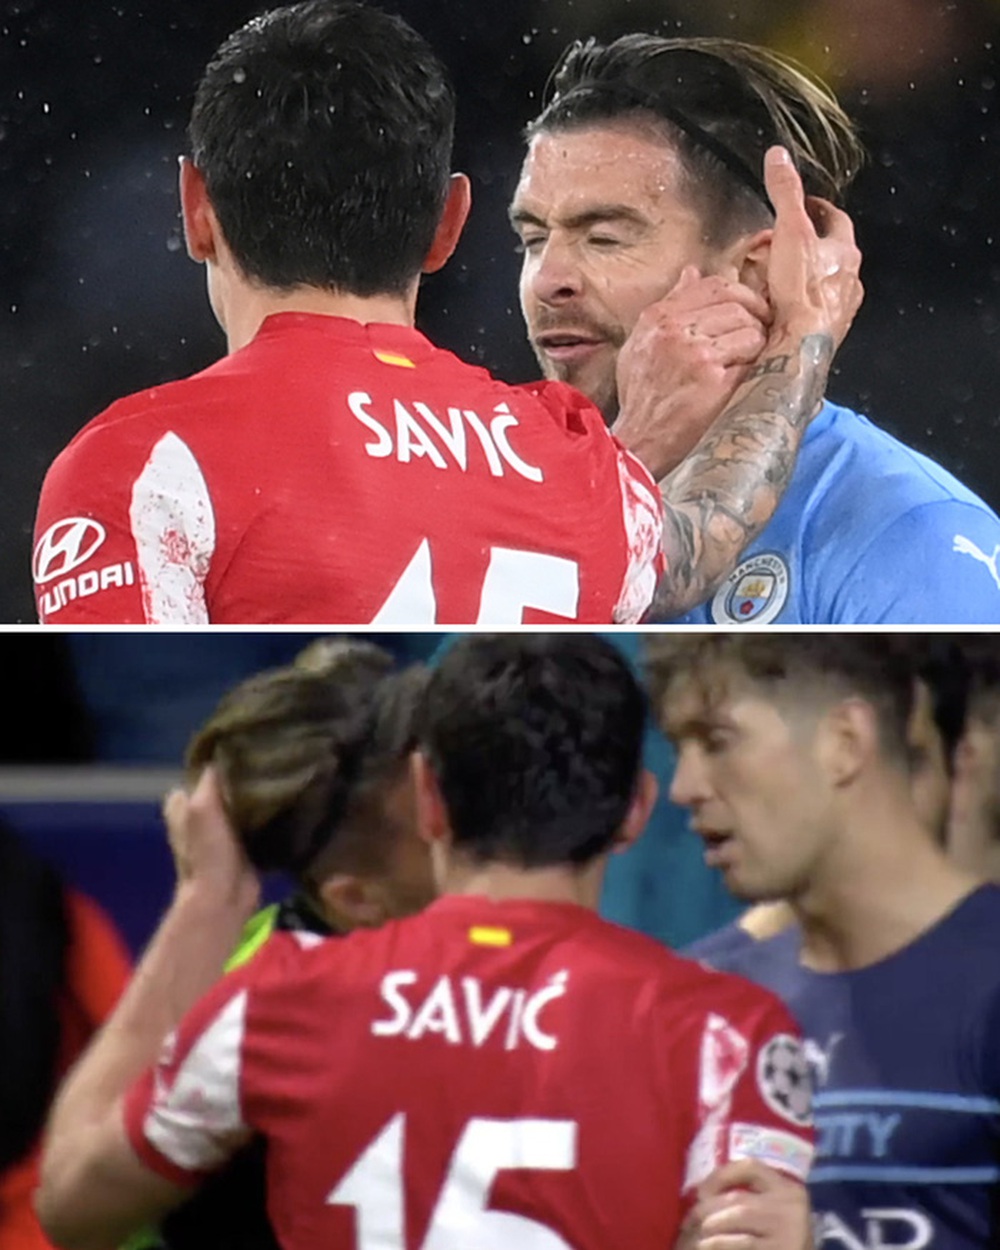 Hỗn loạn sau trận Atletico - Man City: Grealish choảng nhau với Savic, Vrsaljko phun mưa vào đối thủ - Ảnh 4.